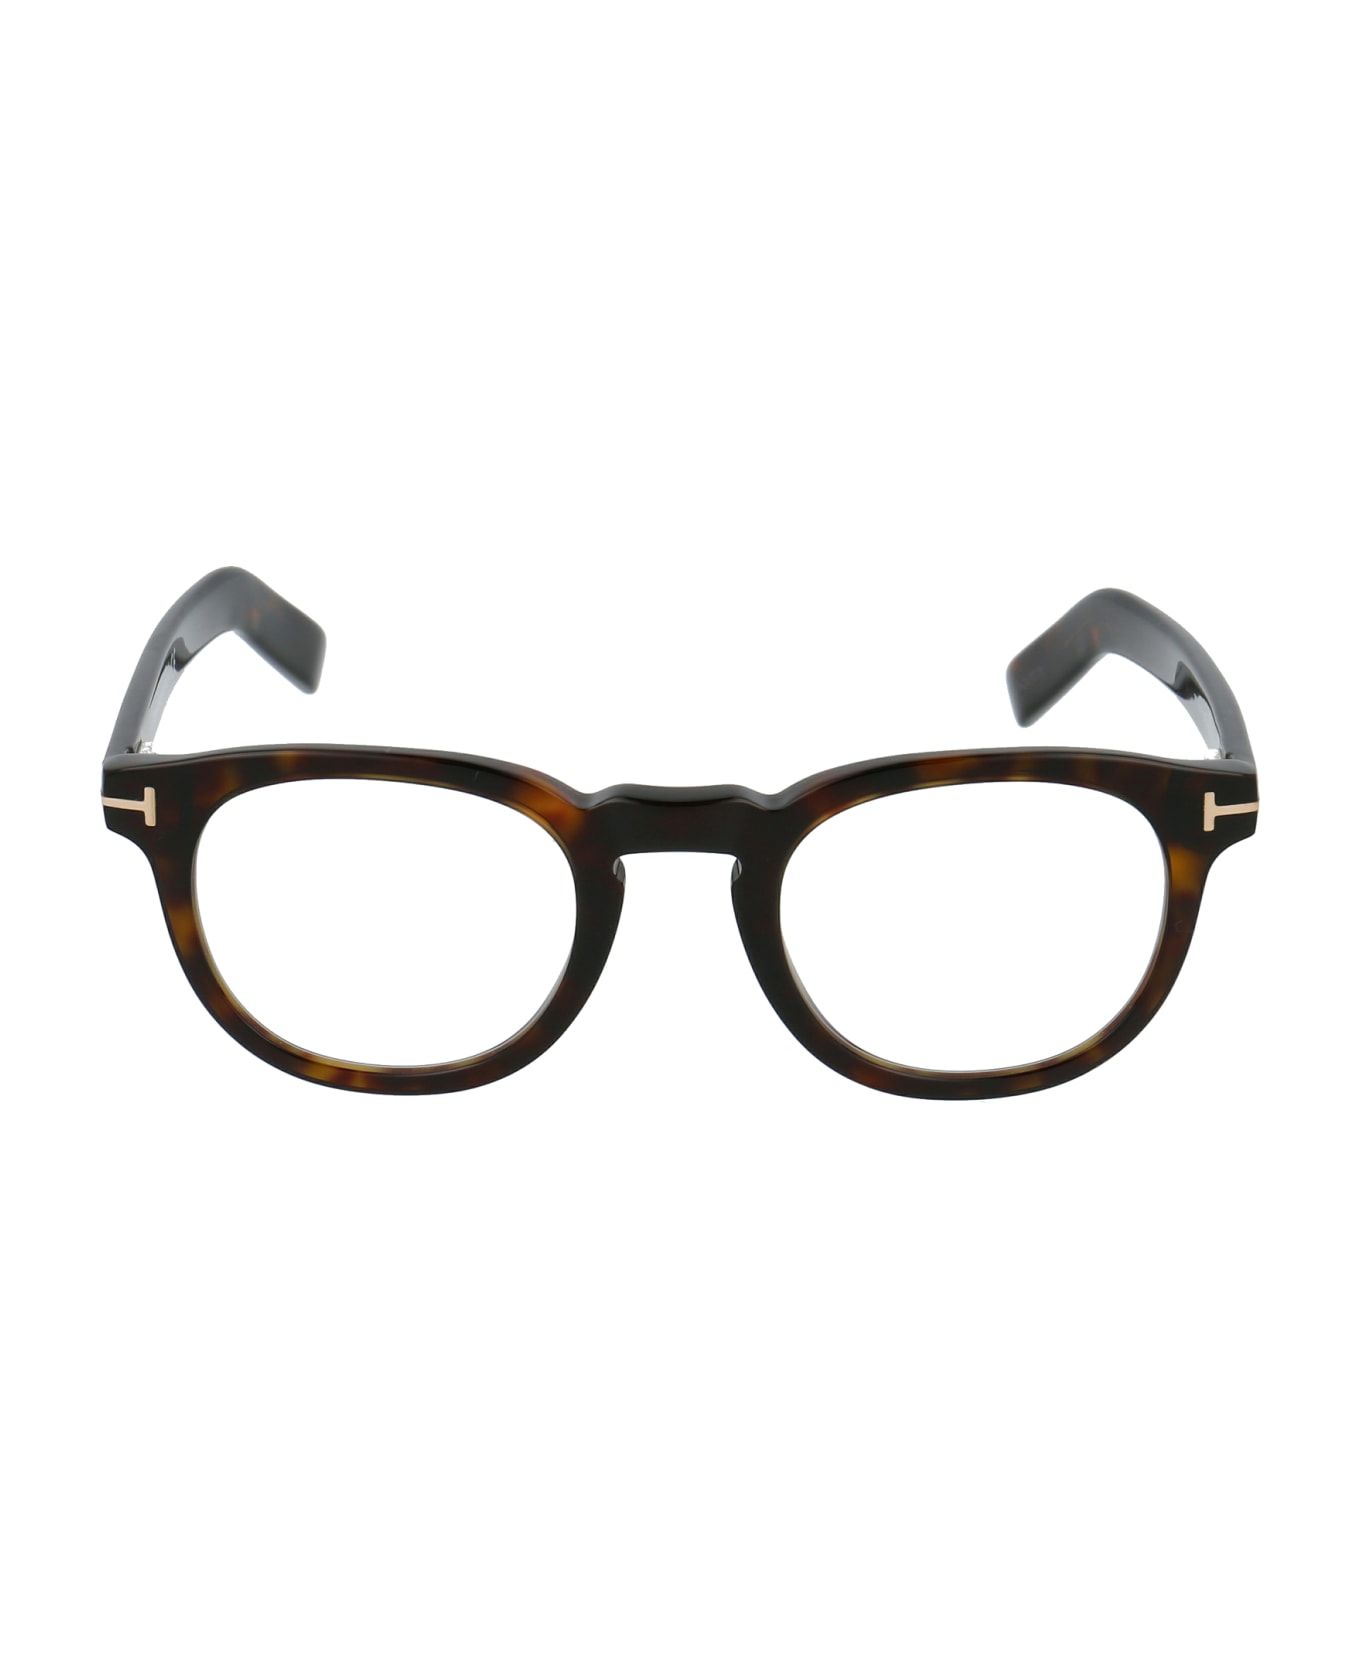 Tom Ford Eyewear Ft5629-b Glasses - 052 Avana Scura